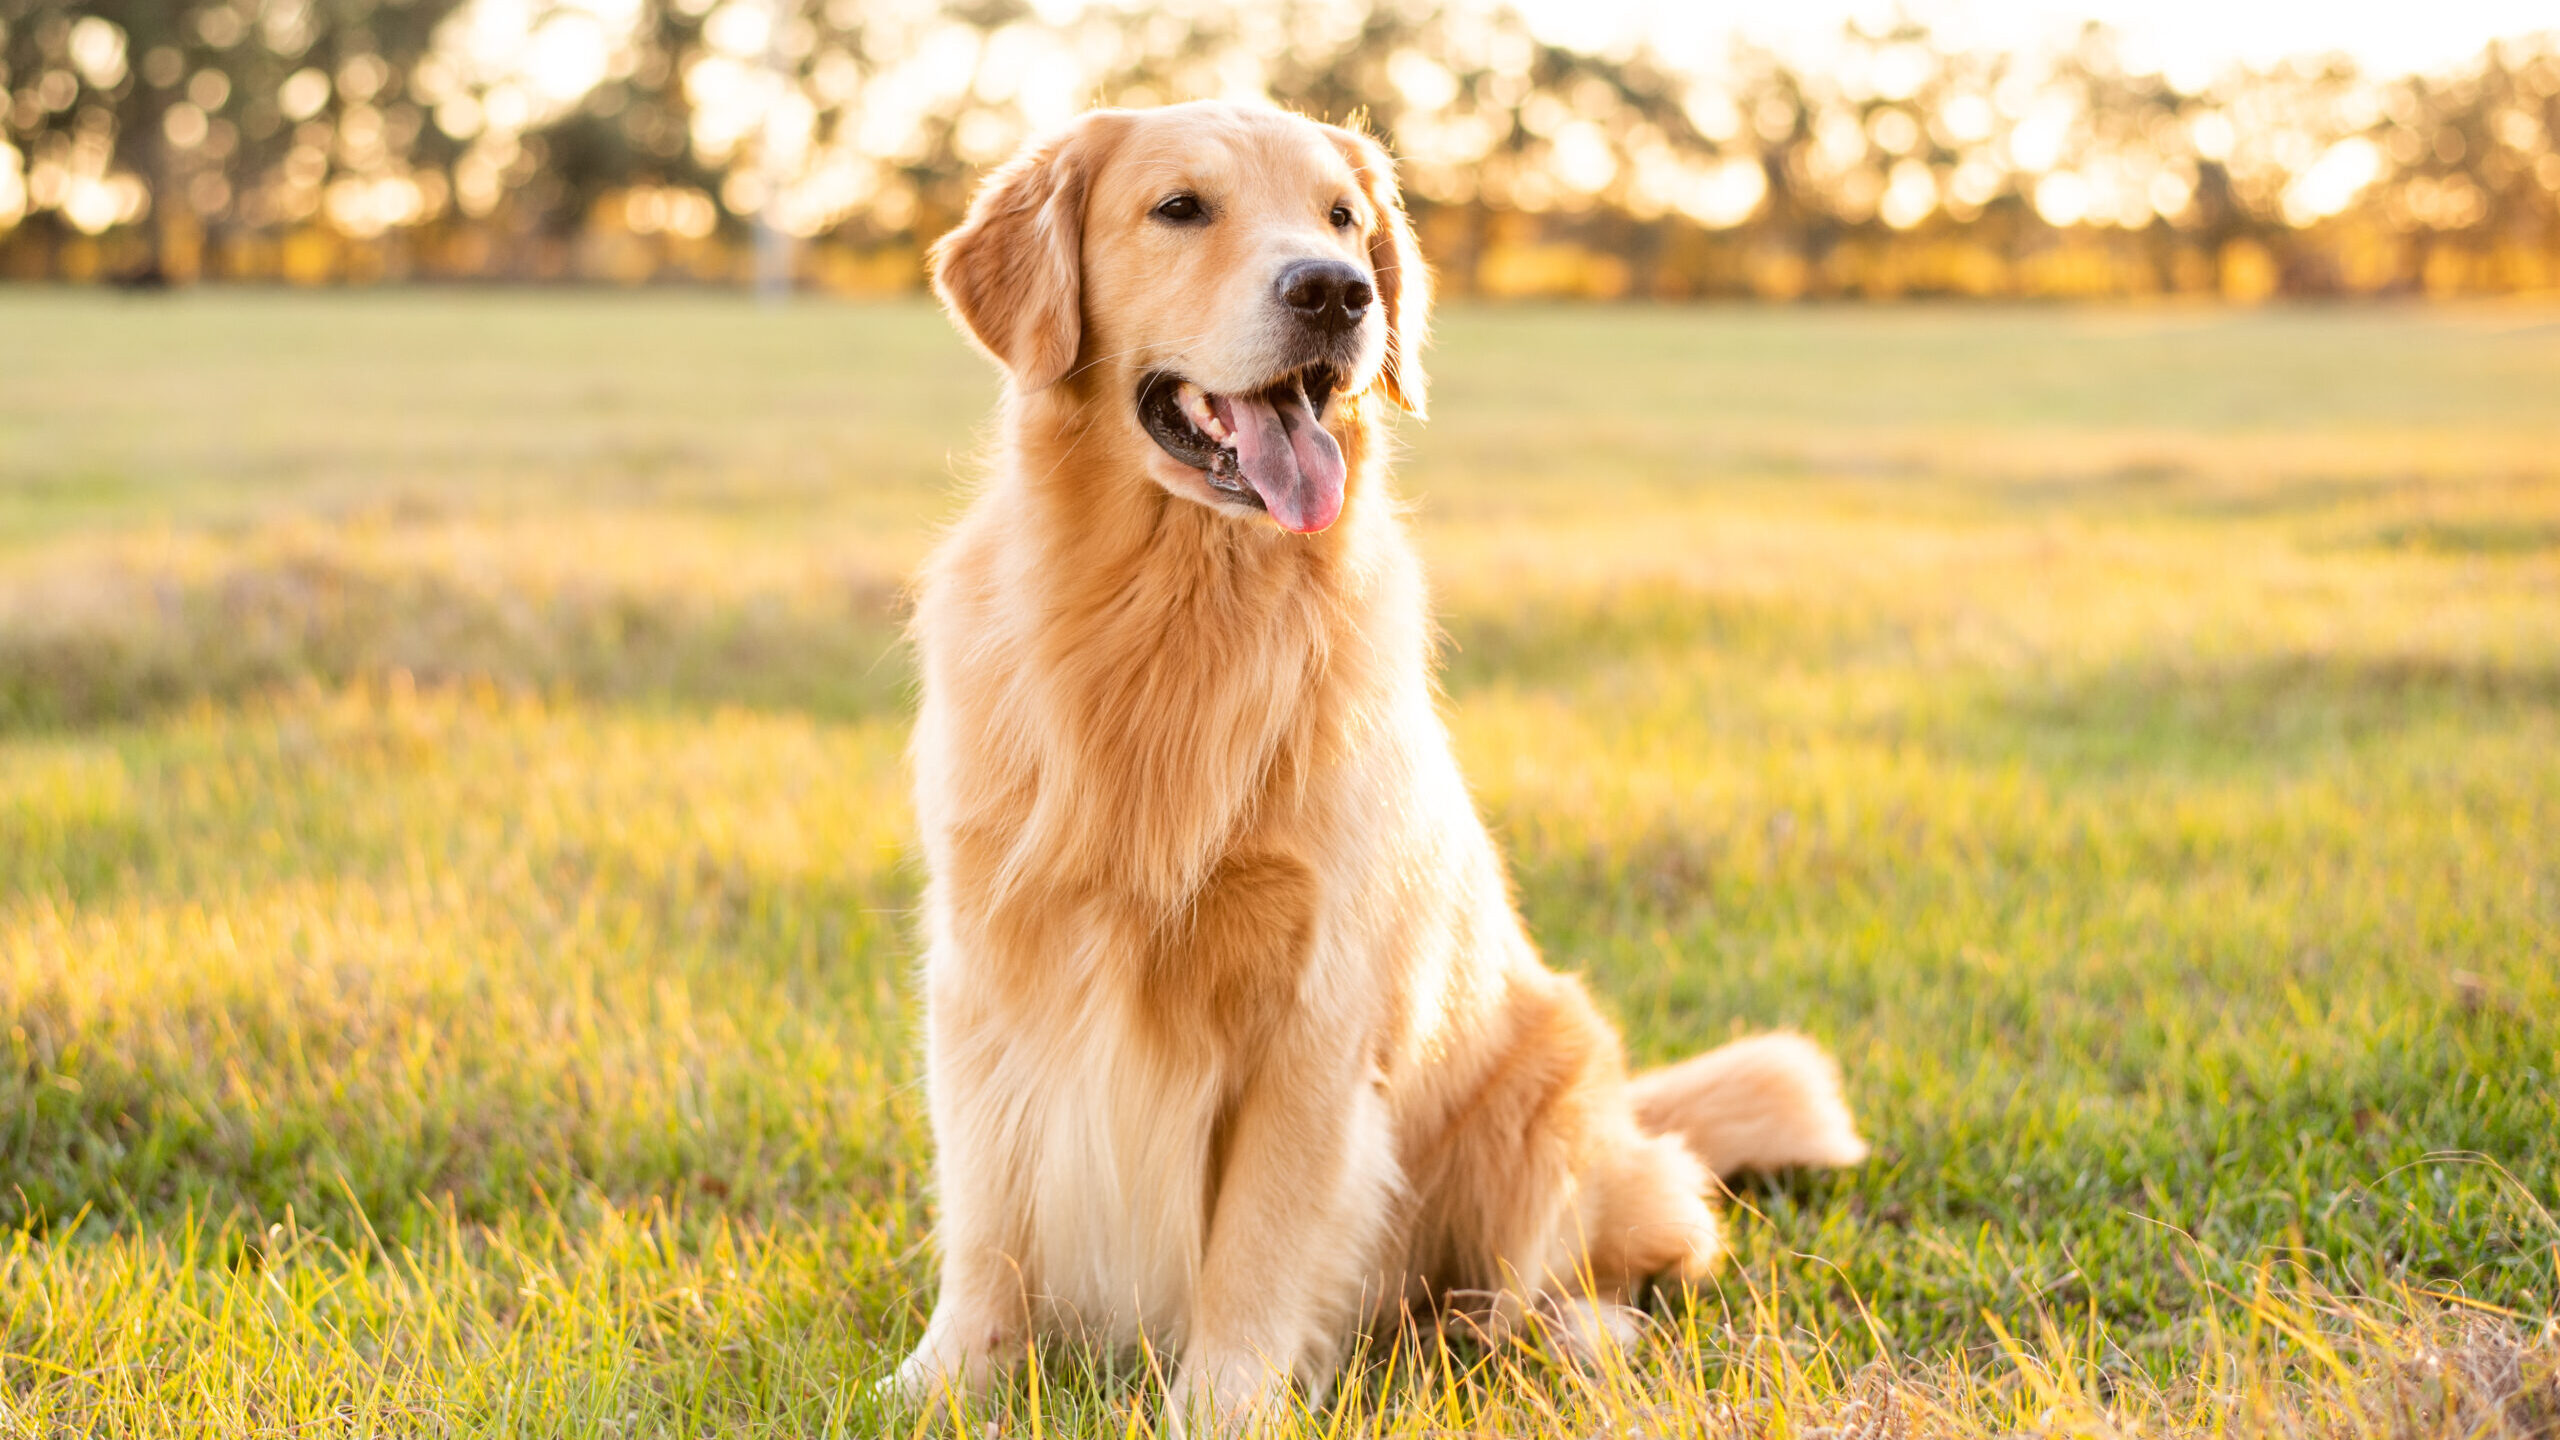 Golden Retriever dog enjoying outdoors at a large grass field